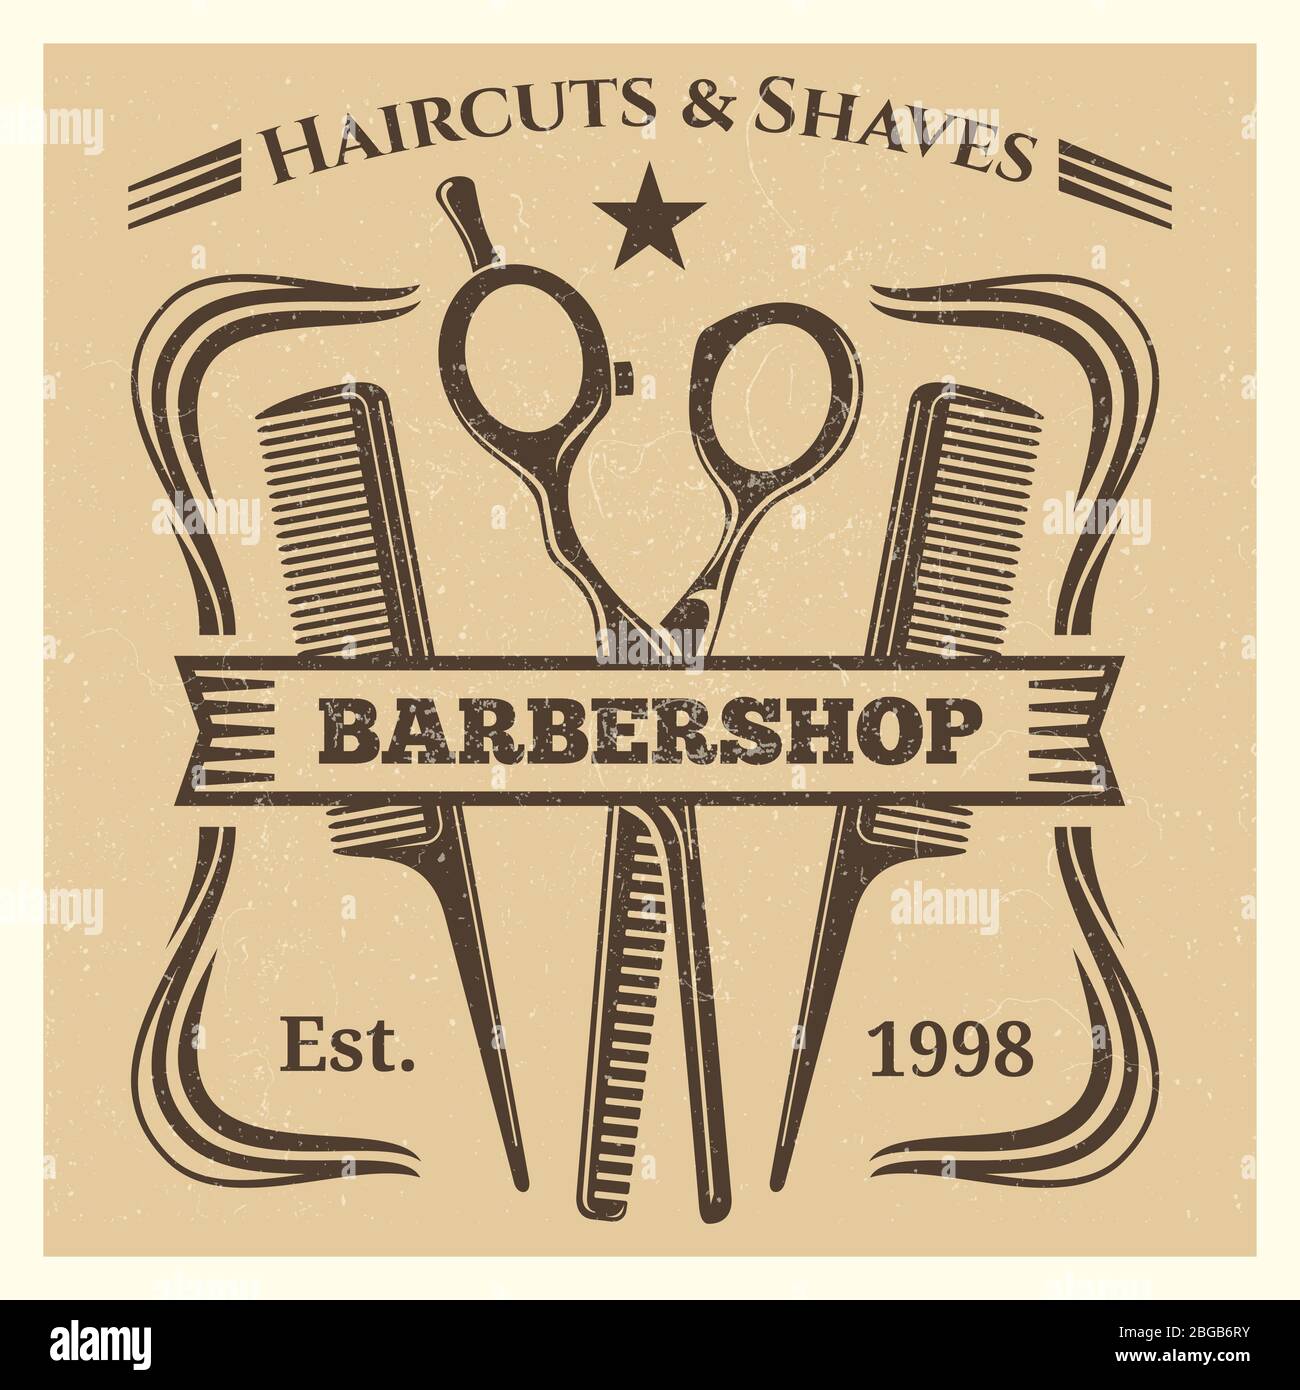 Vintage retro barbershop label desing on grunge background. Vector illustration Stock Vector